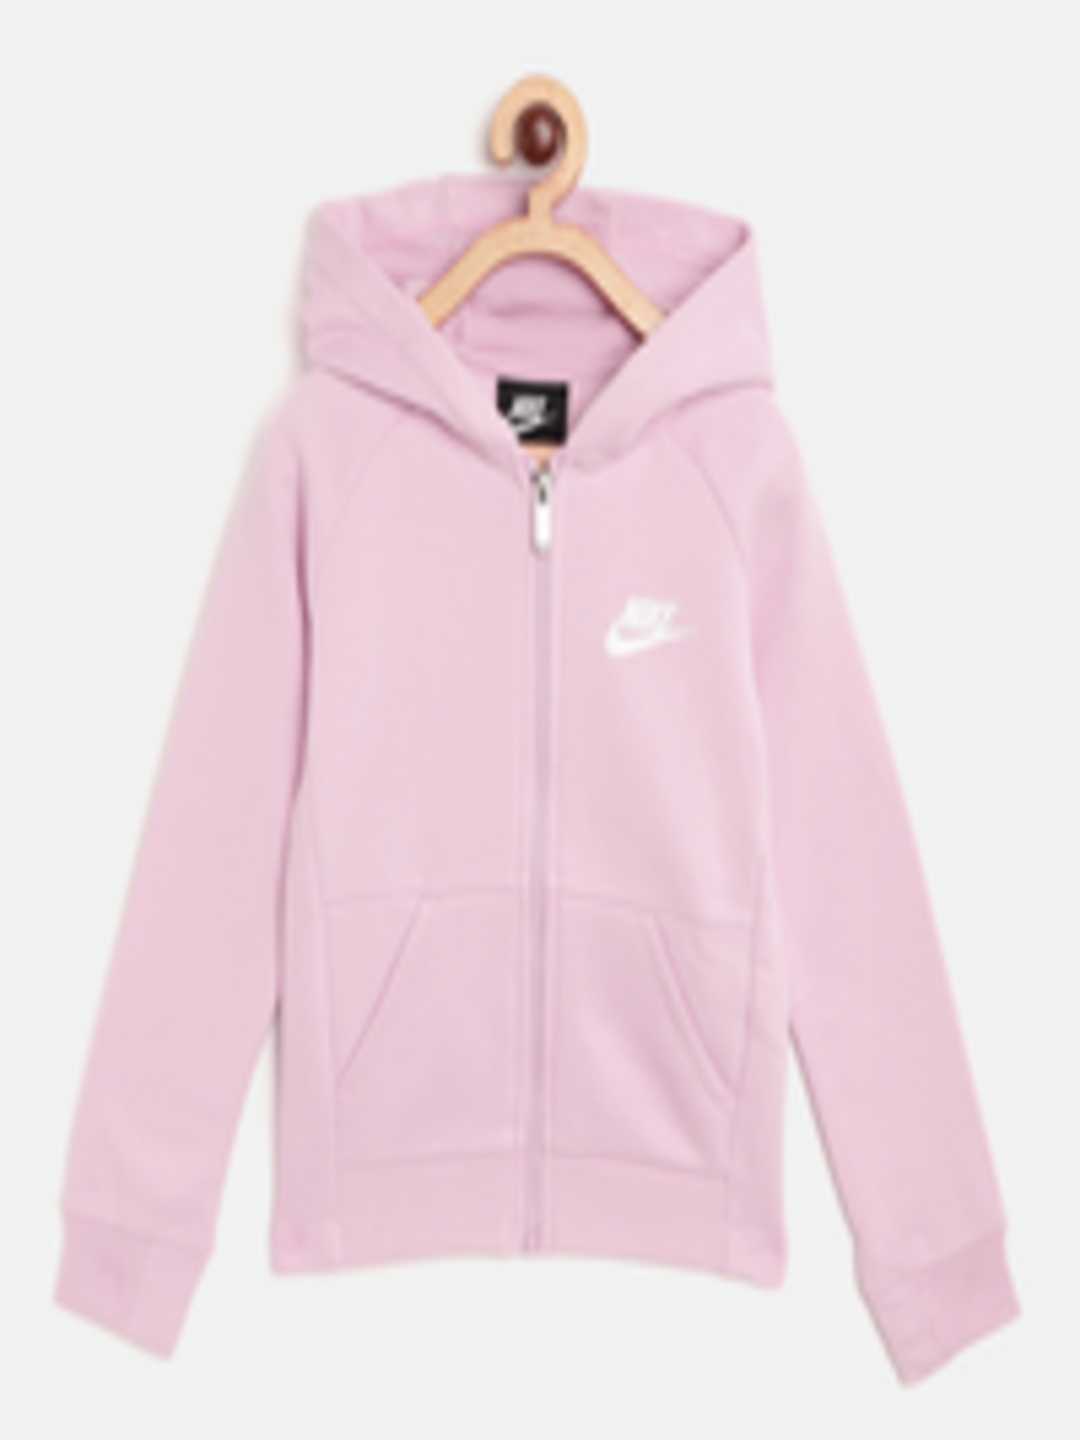 Buy Nike Girls Pink Solid Hooded Sweatshirt - Sweatshirts for Girls ...